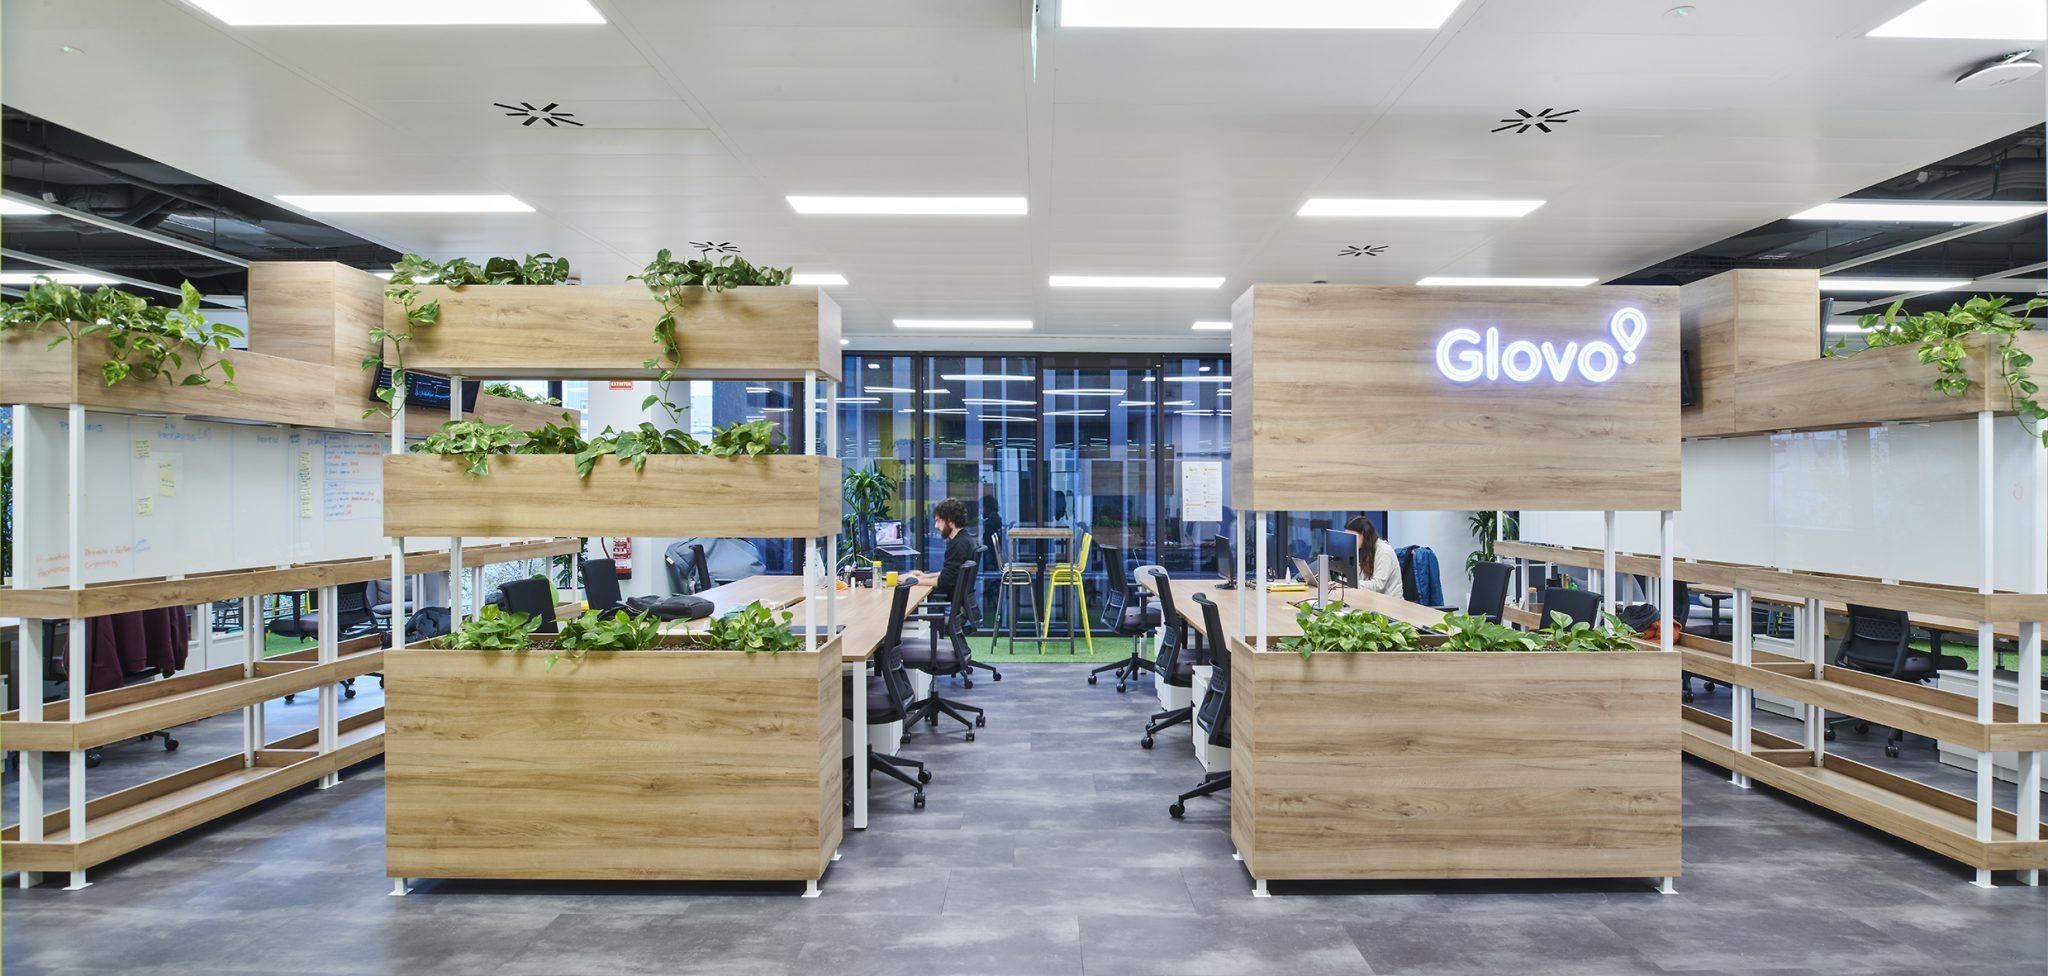 Glovo відкриває офіс розробки у Києві: з'явилась перша вакансія